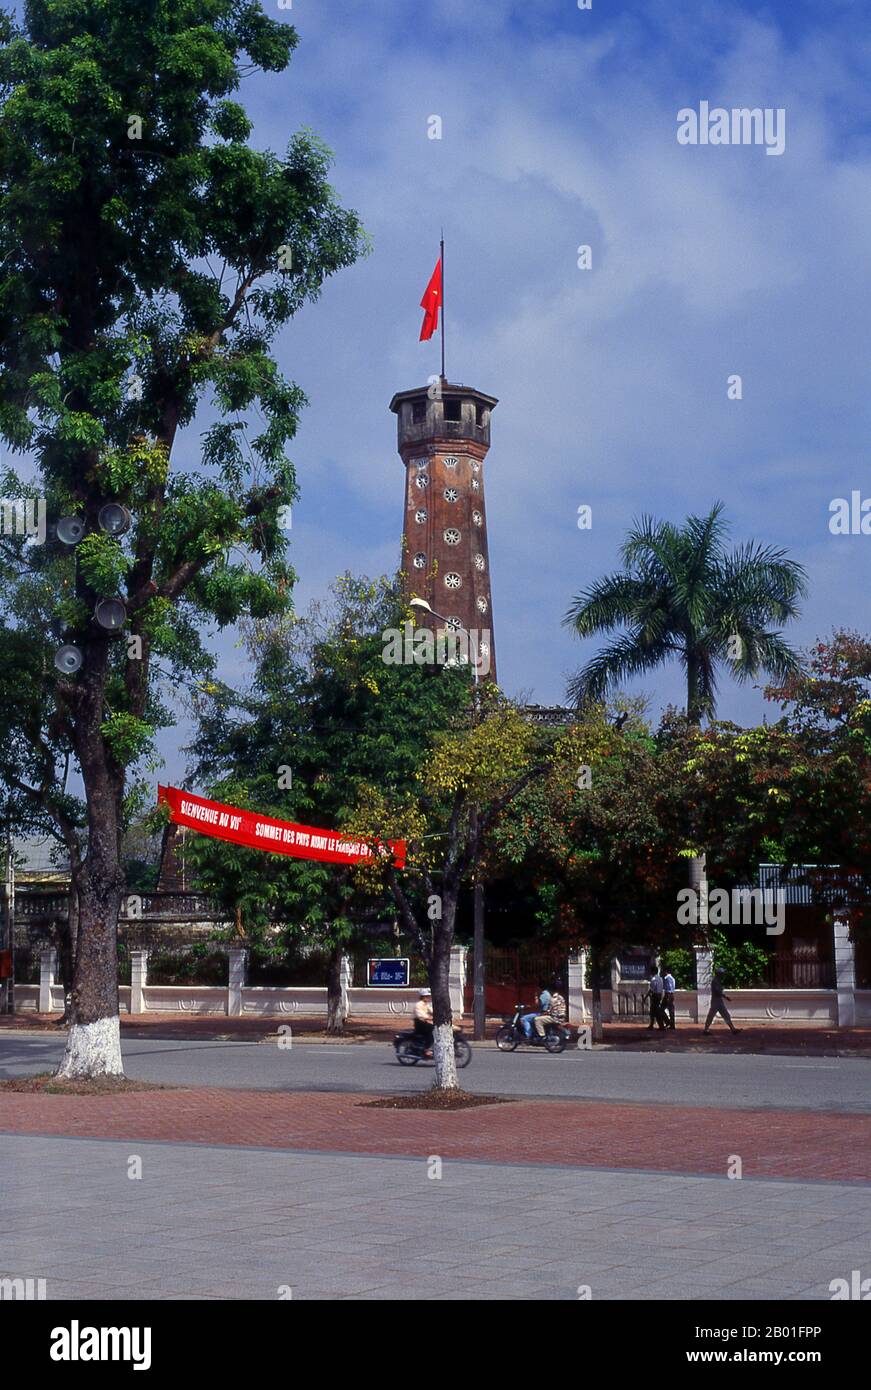 Vietnam: Cot Co oder der Flaggenturm auf dem Gelände des Militärhistorischen Museums, Hanoi. Der sechseckige Cot Co Flag Tower wurde 1803 von Kaiser Gia Long aus der Nguyen-Dynastie als Symbol der Nguyen-Macht im Norden wiederaufgebaut. Der Turm ist ein wichtiges Symbol sowohl für Hanoi als auch für die vietnamesischen Streitkräfte. Stockfoto